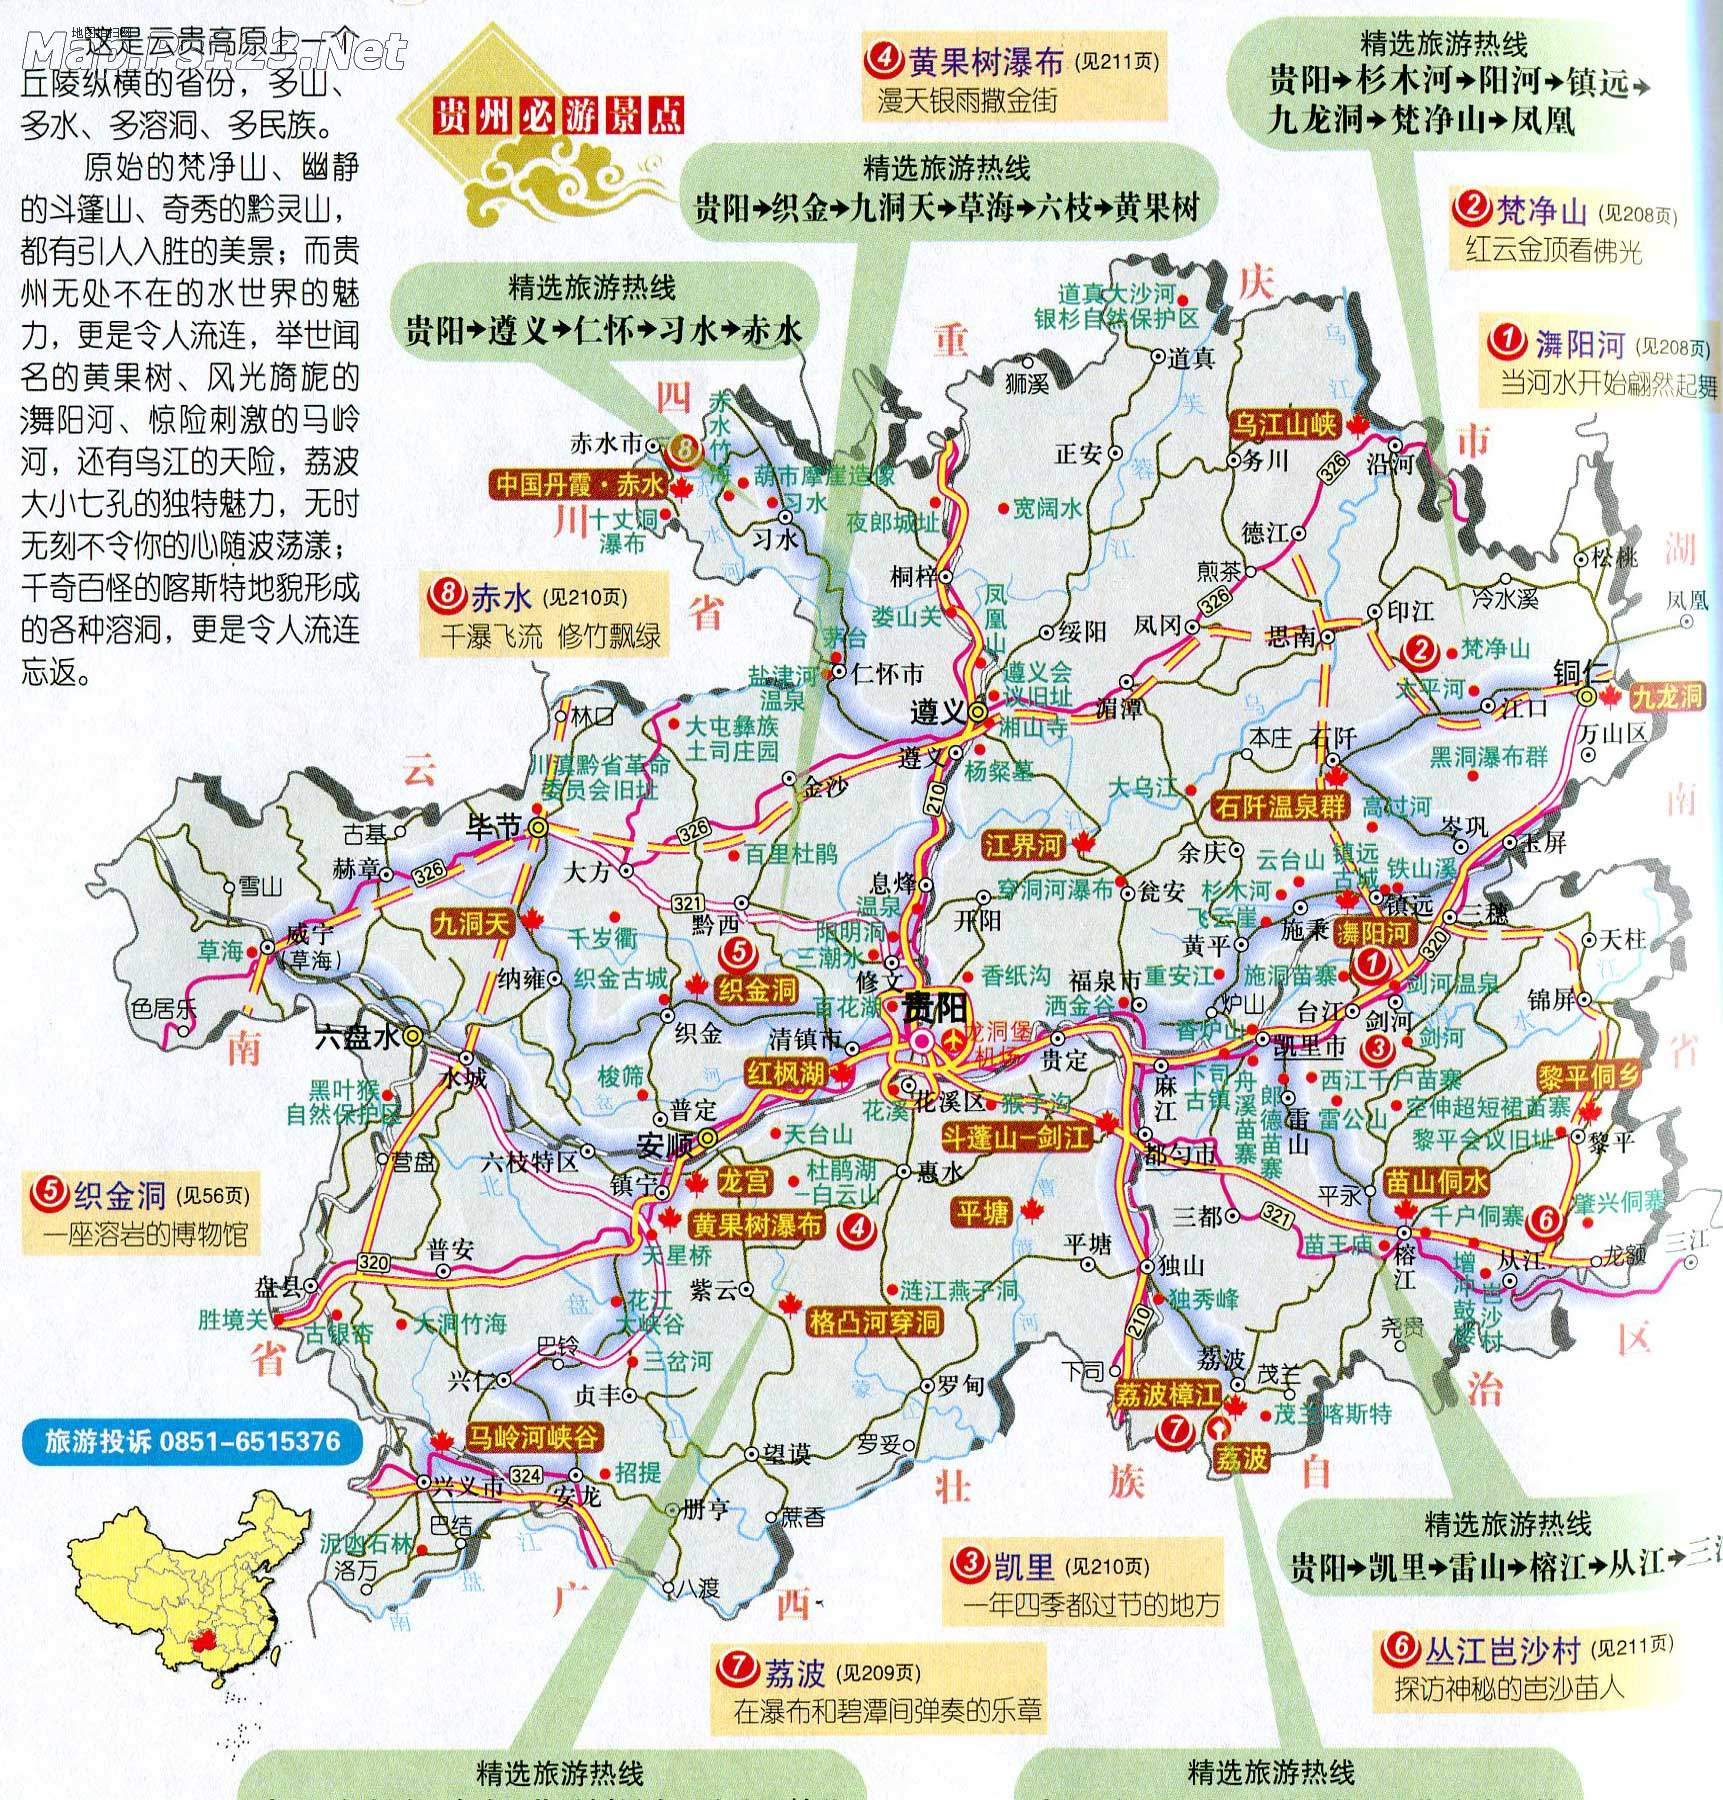 贵州交通地图|贵州交通地图全图高清版大图片|旅途风景图片网|www.visacits.com